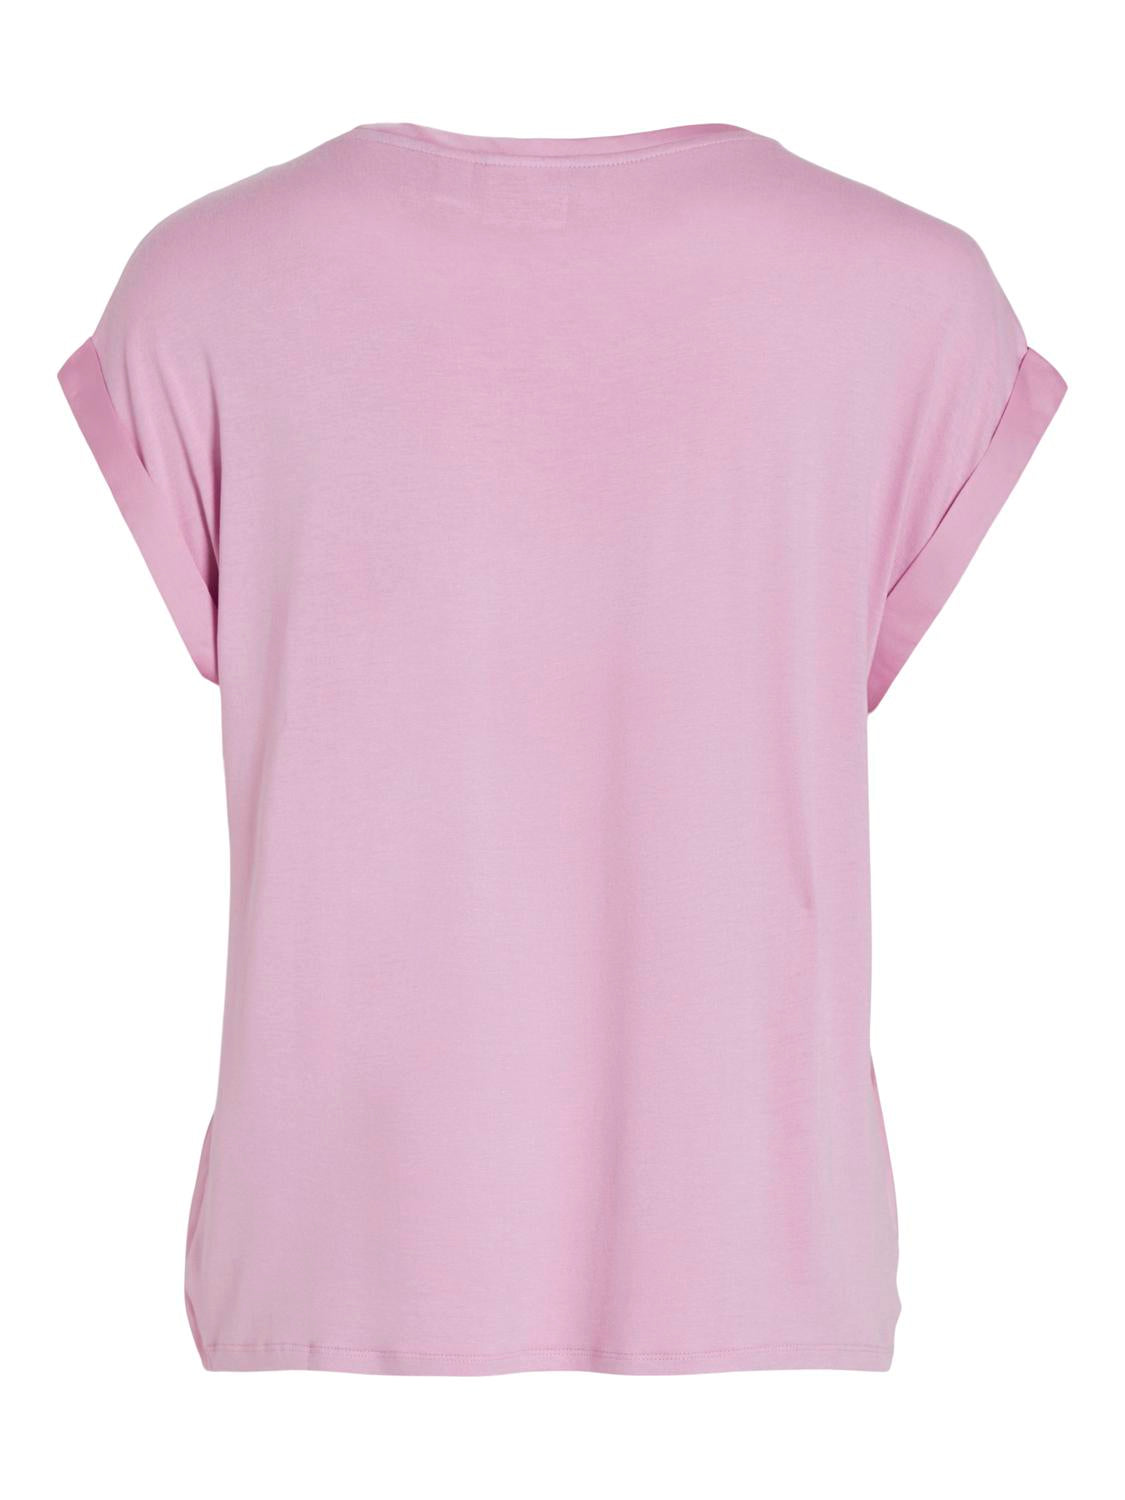 VIELLETTE T-Shirts & Tops - Pastel Lavender